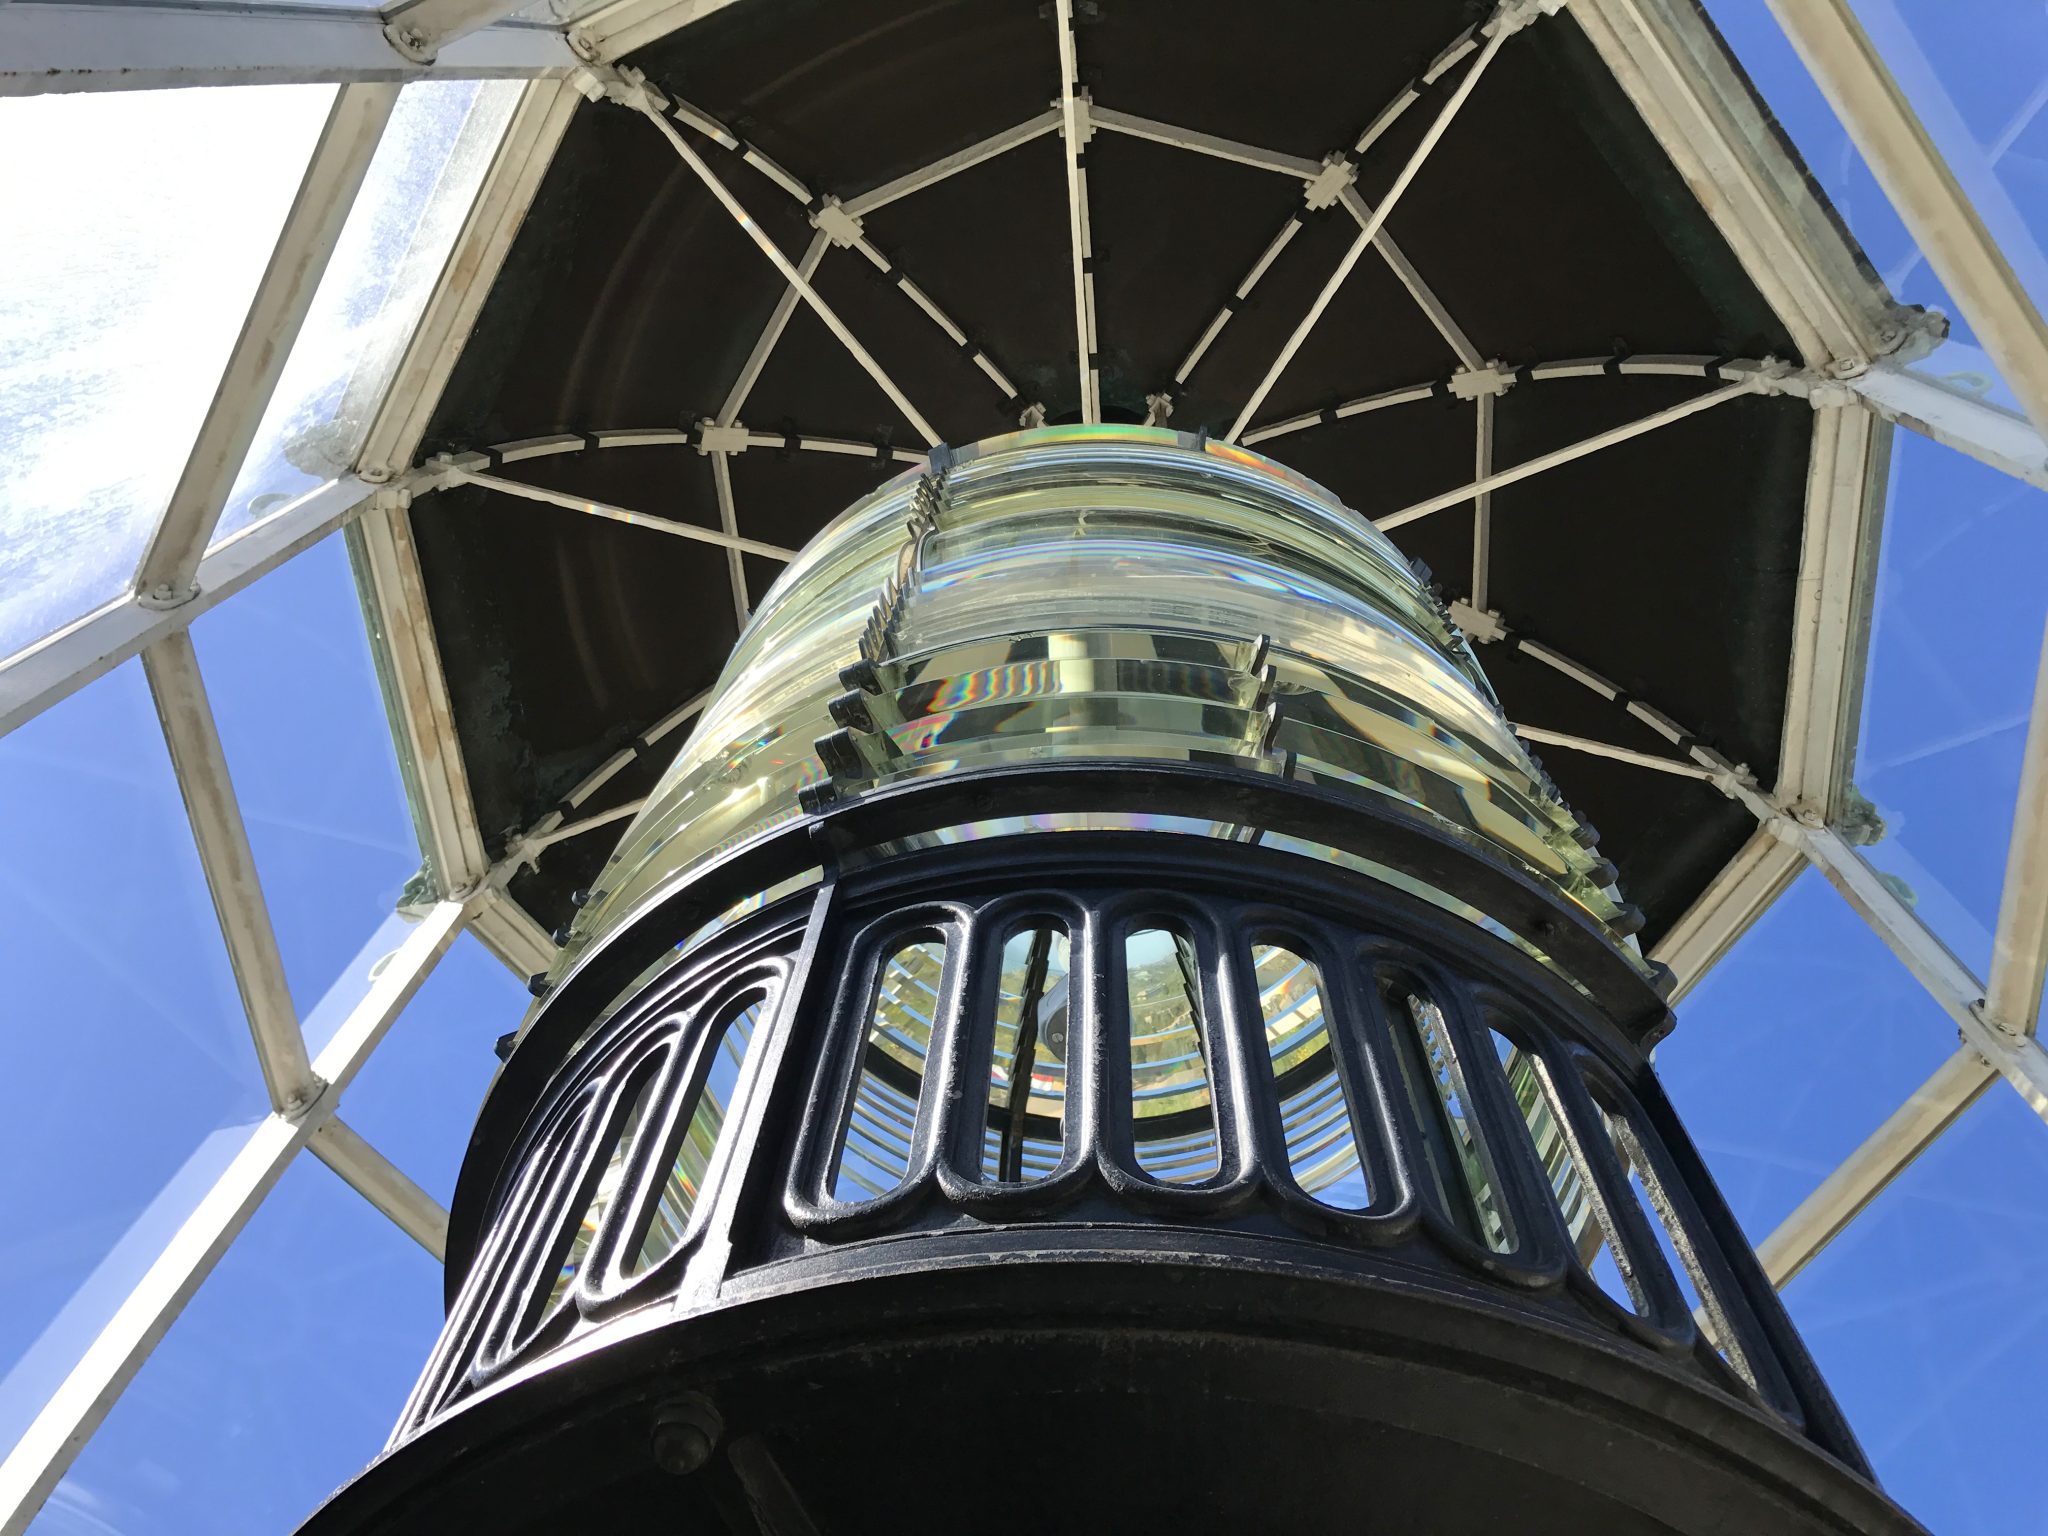 Lighthouse fresnel lens light tower